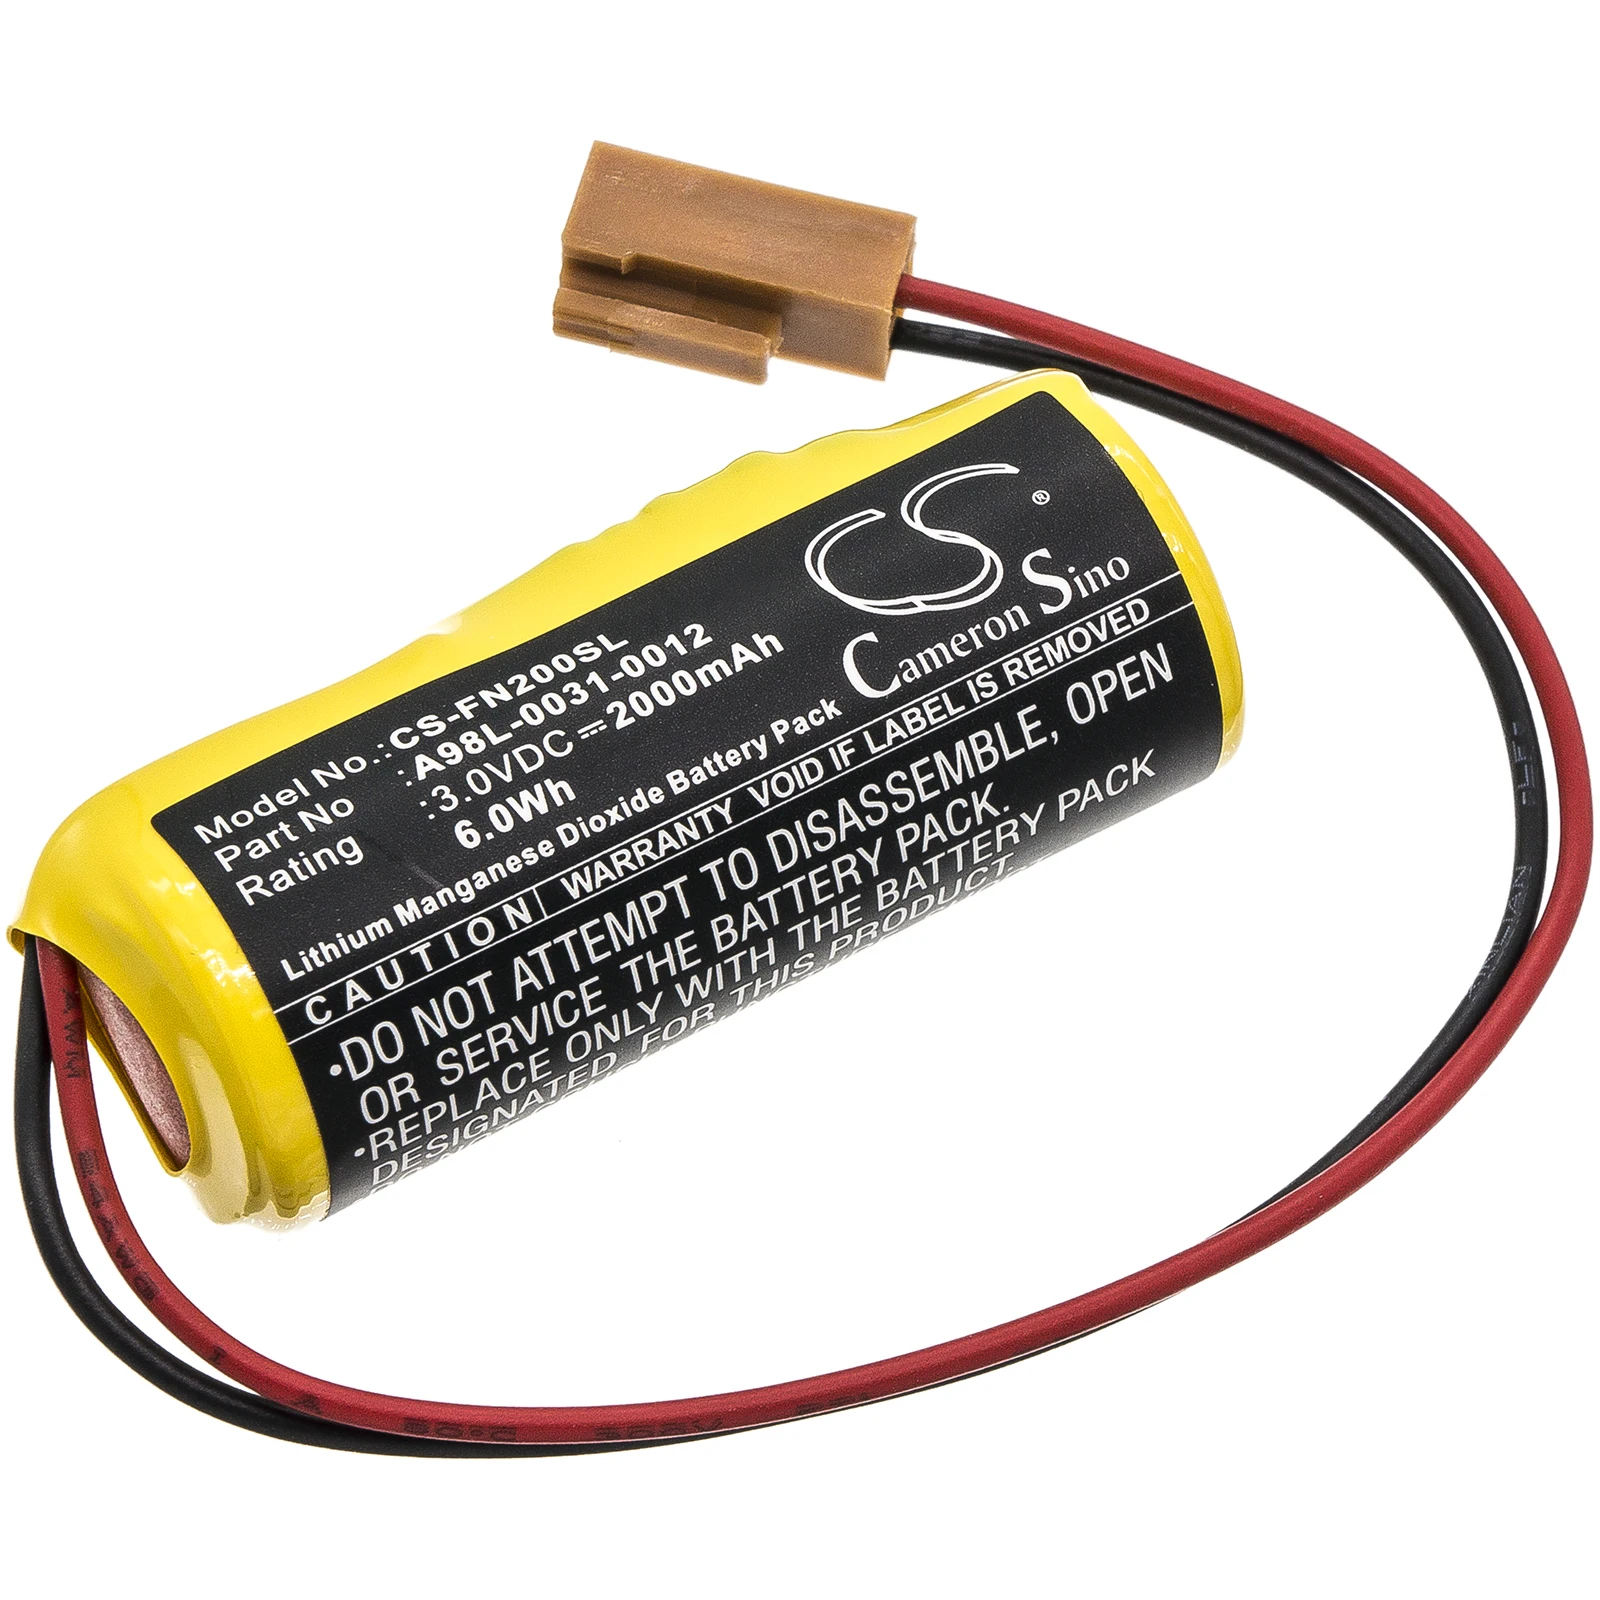 

CS PLC Battery For GE FANUC 16i 18i 21i Power Mate iD 0i-B 0i-Mate-B FANUC 0i-D Fits Le Blonde A98L00310012 CR17540SE-RL